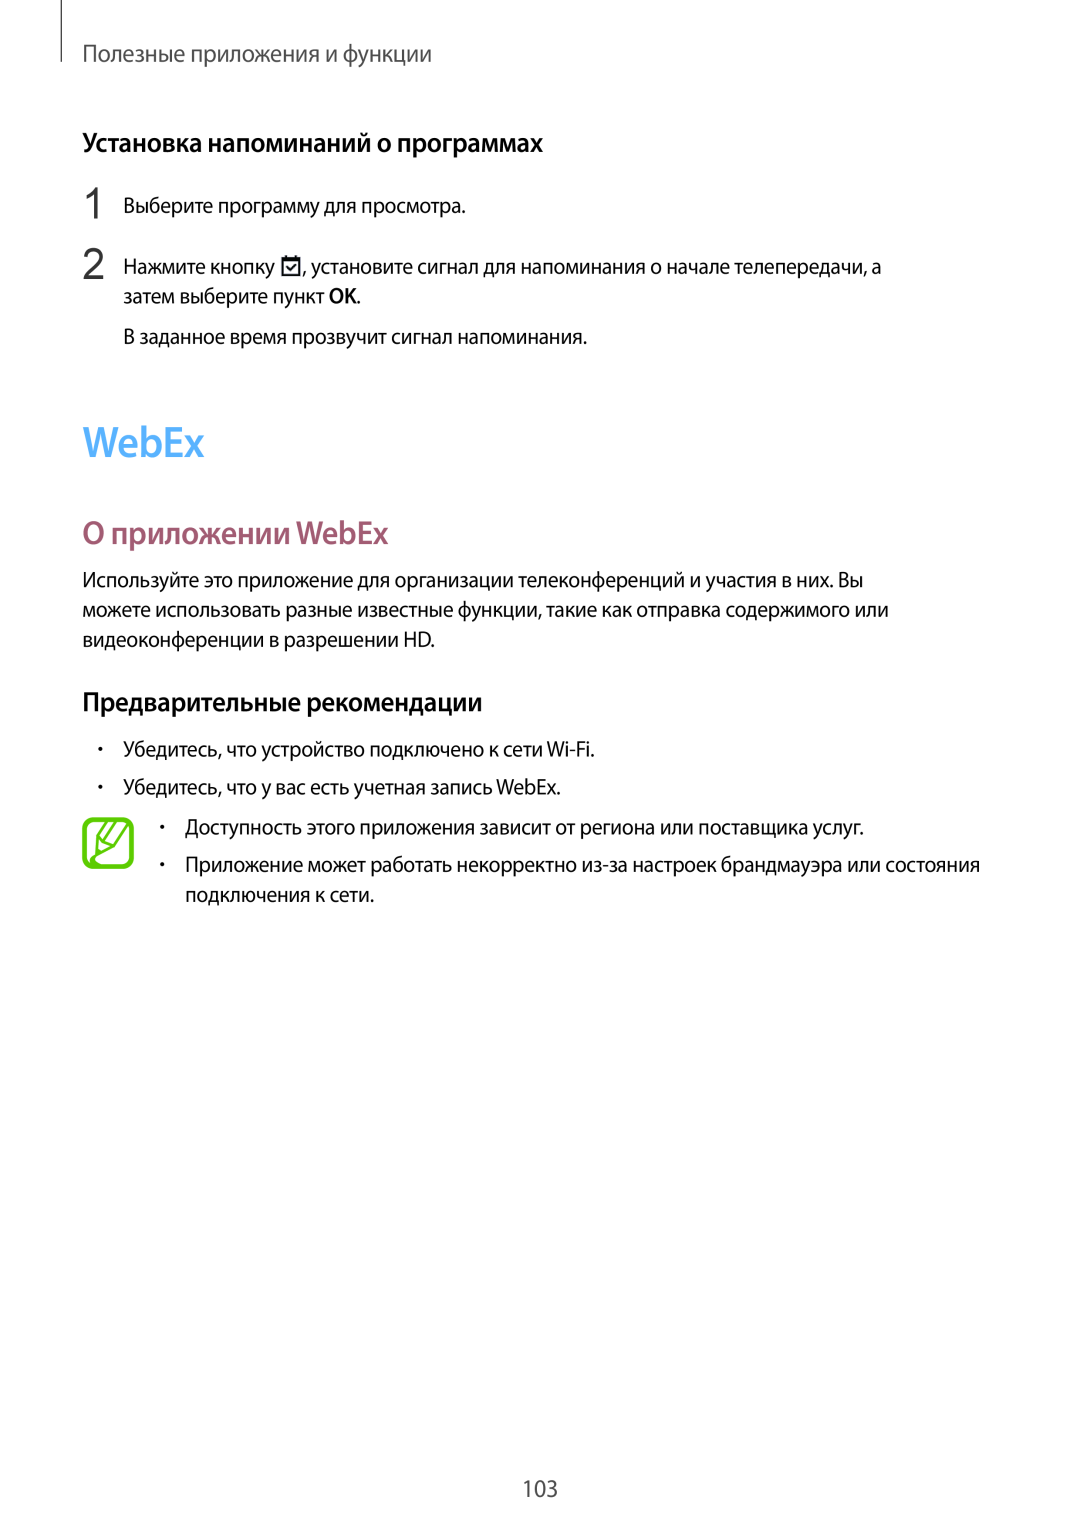 Samsung SM-T800NHAASER manual О приложении WebEx, Установка напоминаний о программах, Предварительные рекомендации 